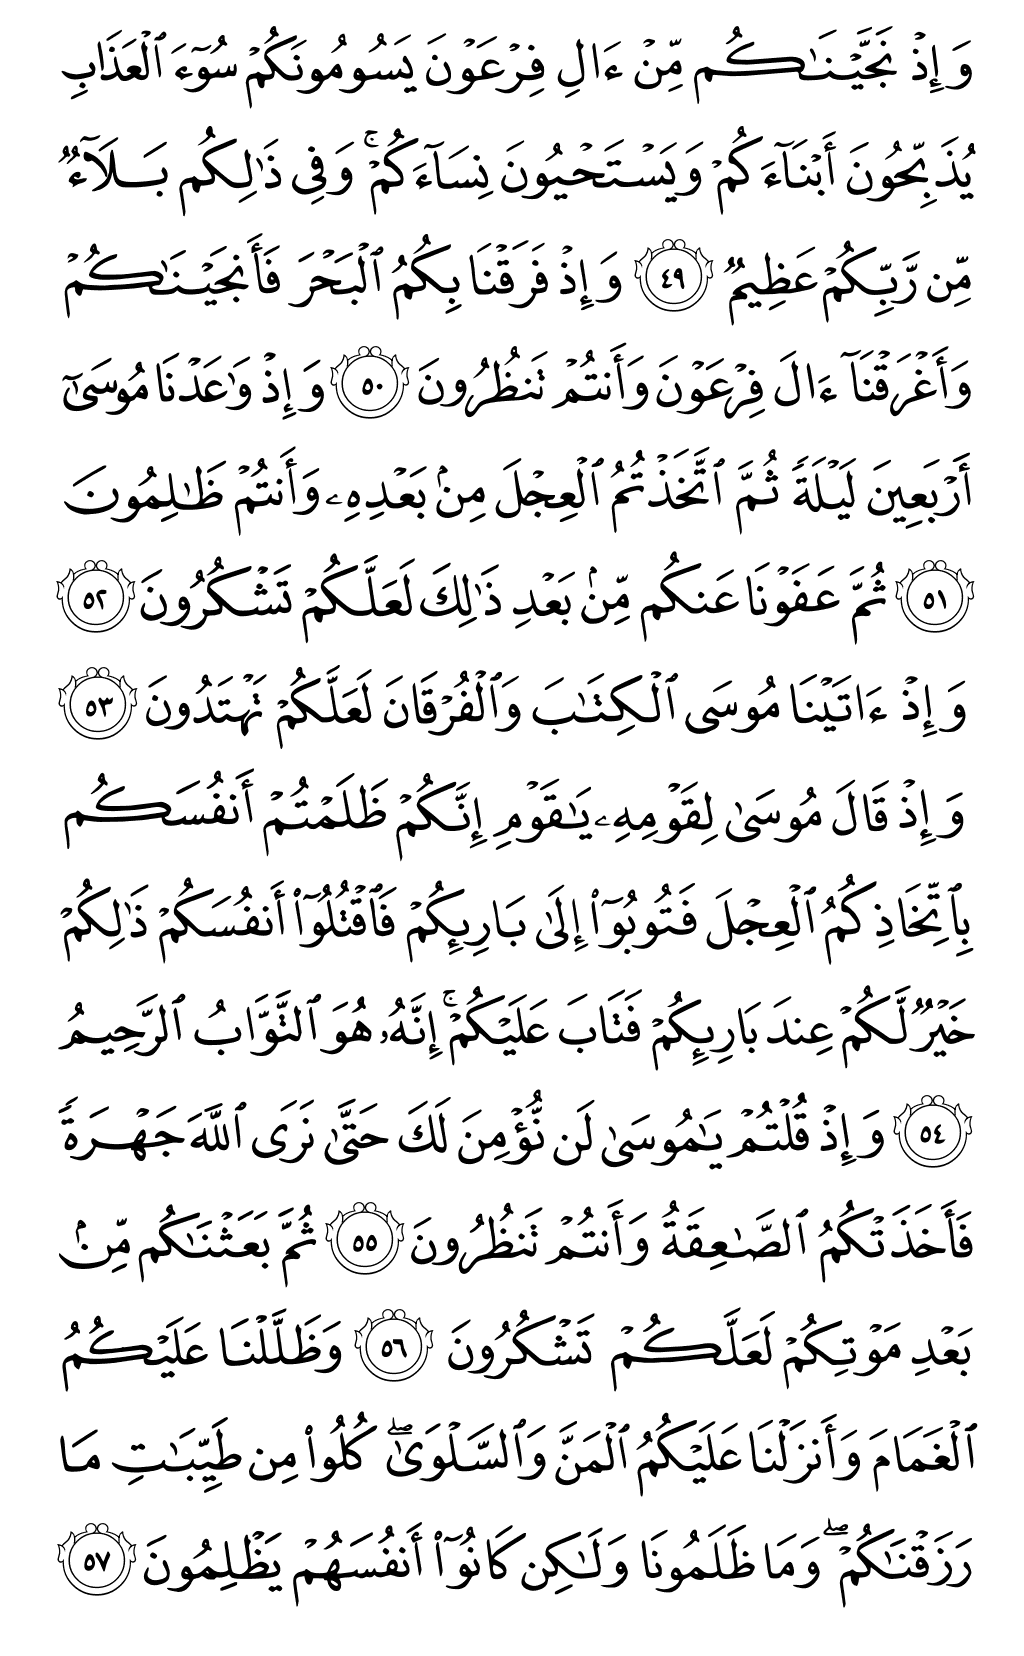 الصفحة رقم 8 من القرآن الكريم